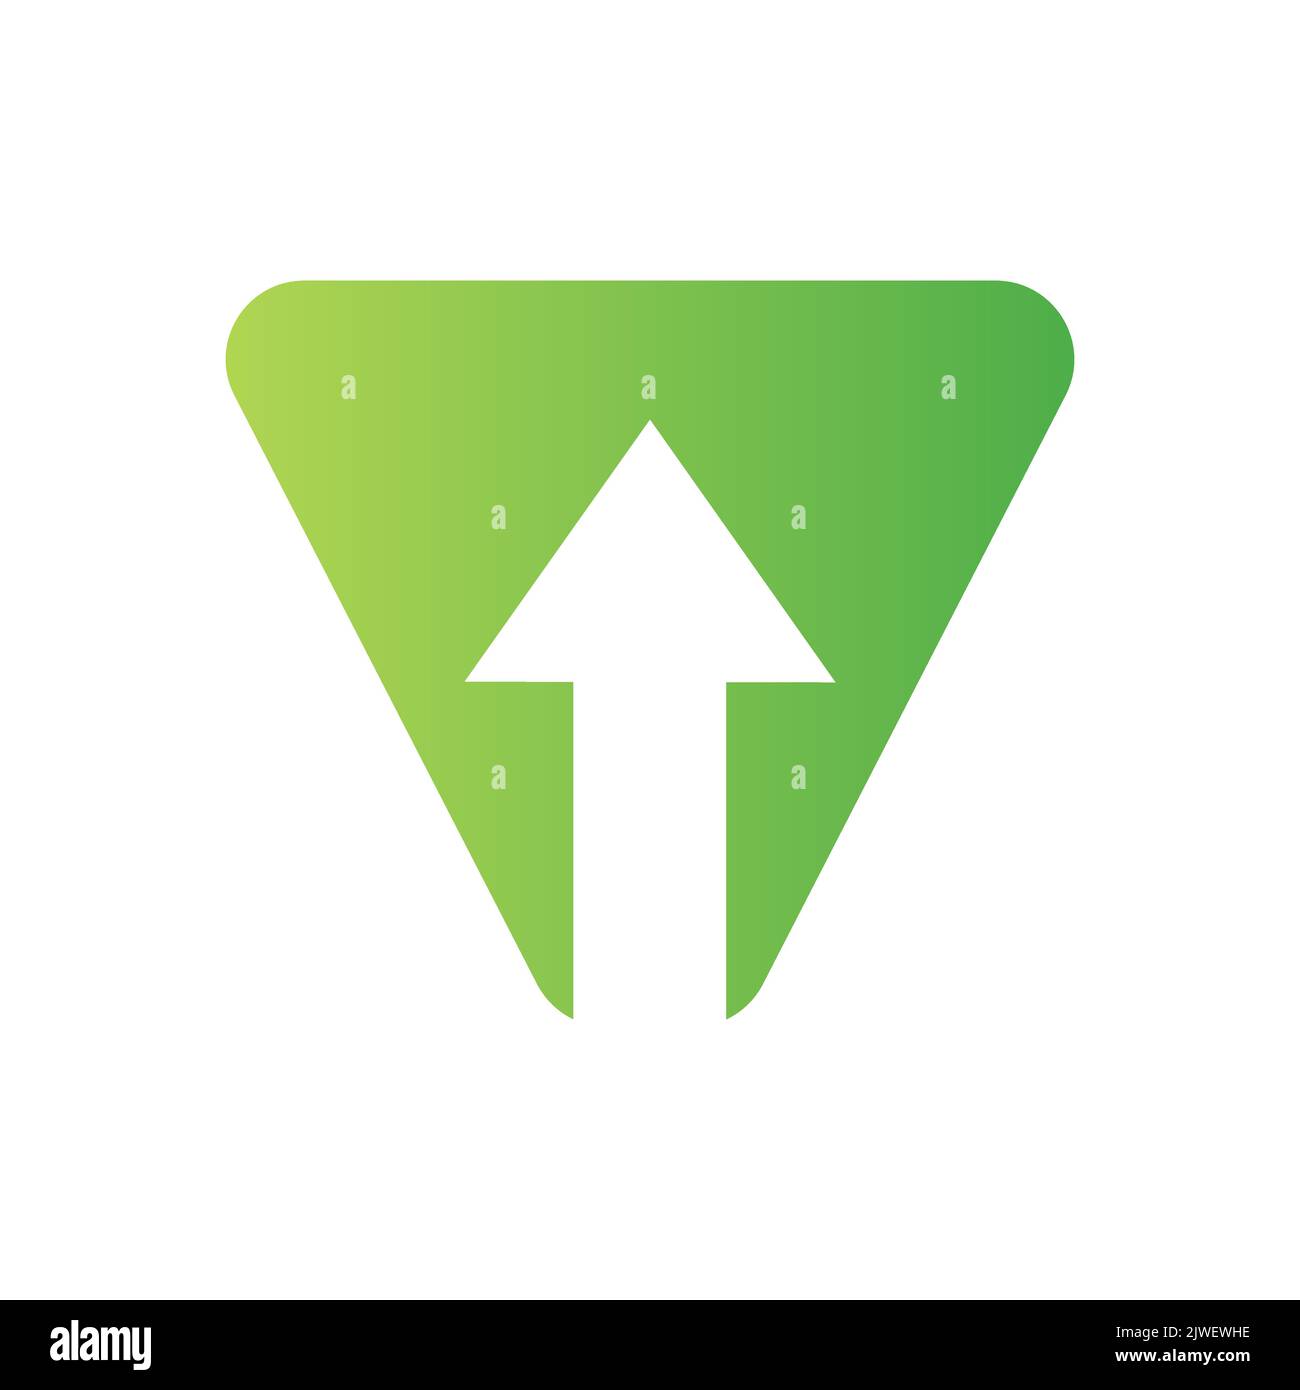 Logo financier lettre V avec flèche de croissance. Elément comptable, modèle de vecteur de symbole d'investissement financier Illustration de Vecteur